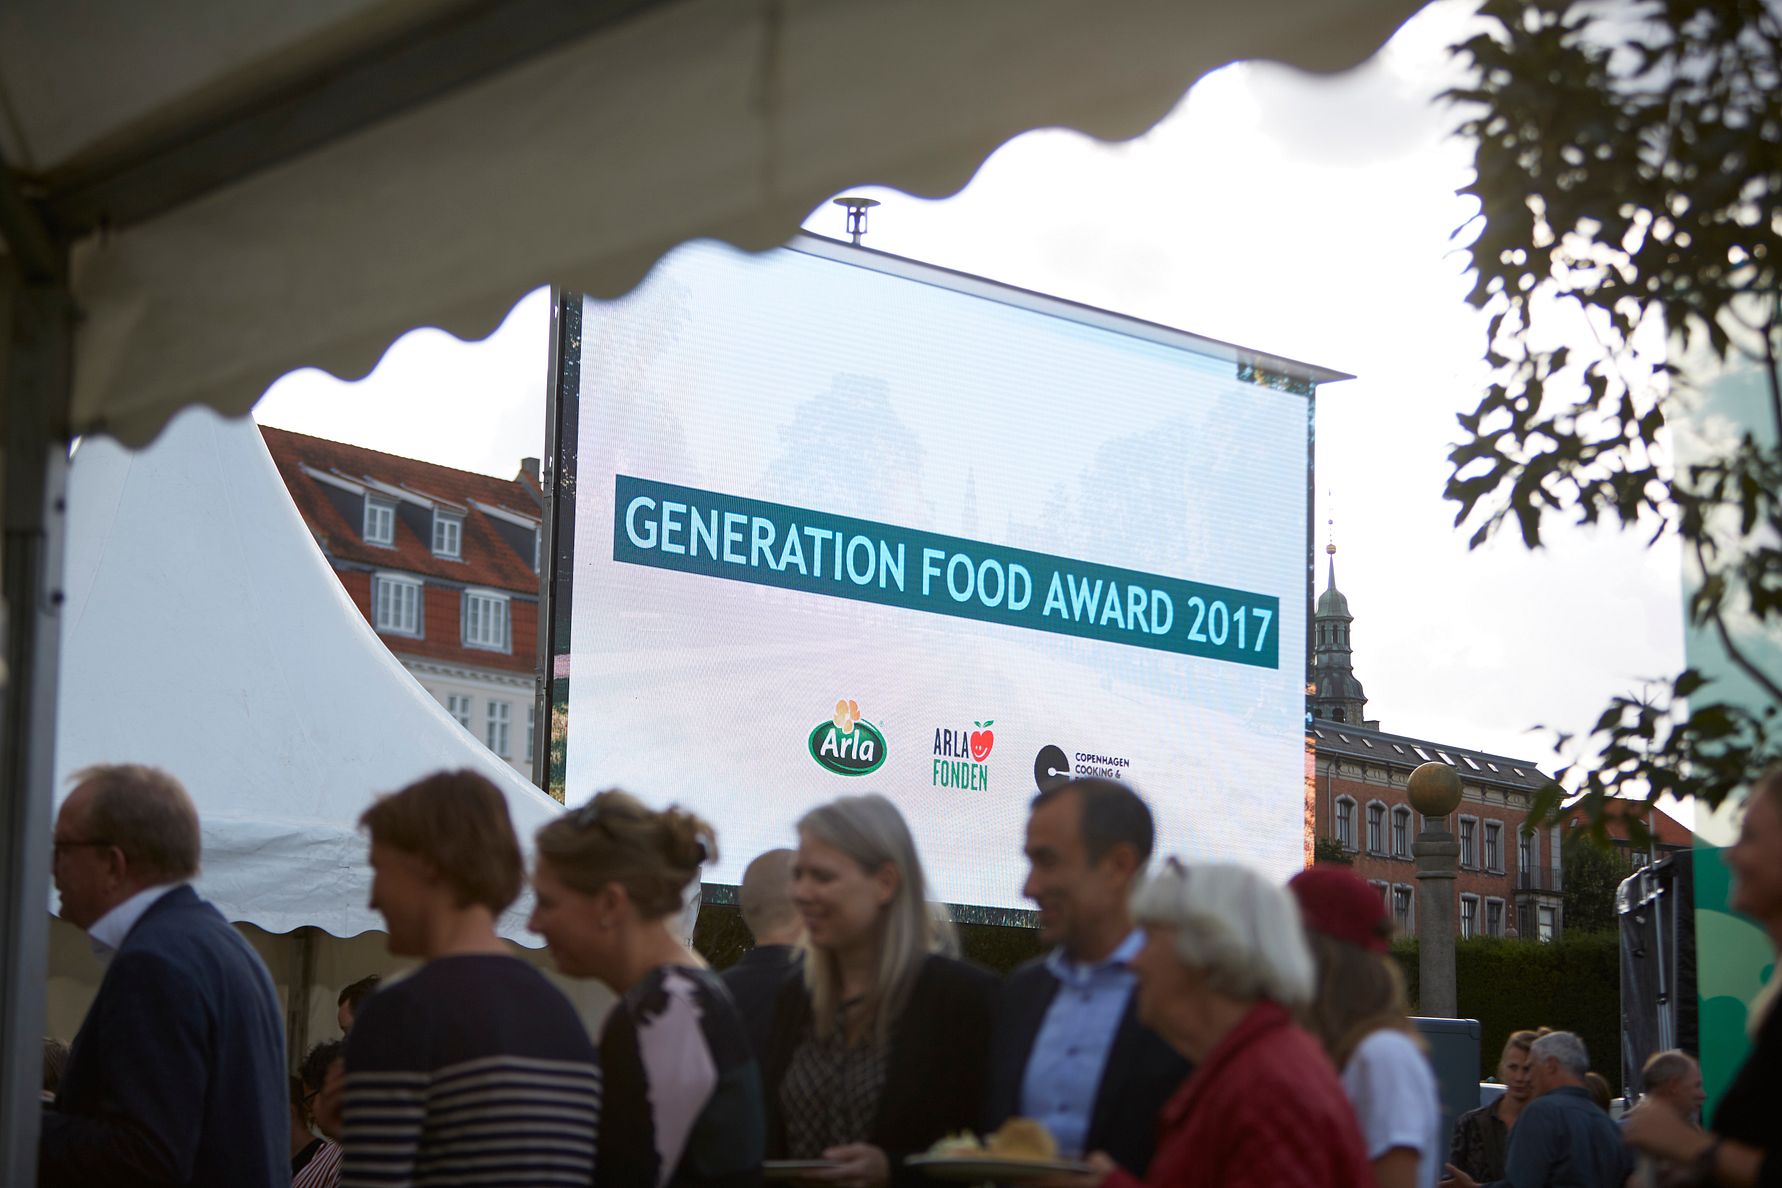 Her er vinderne af Generation Food Award 2017